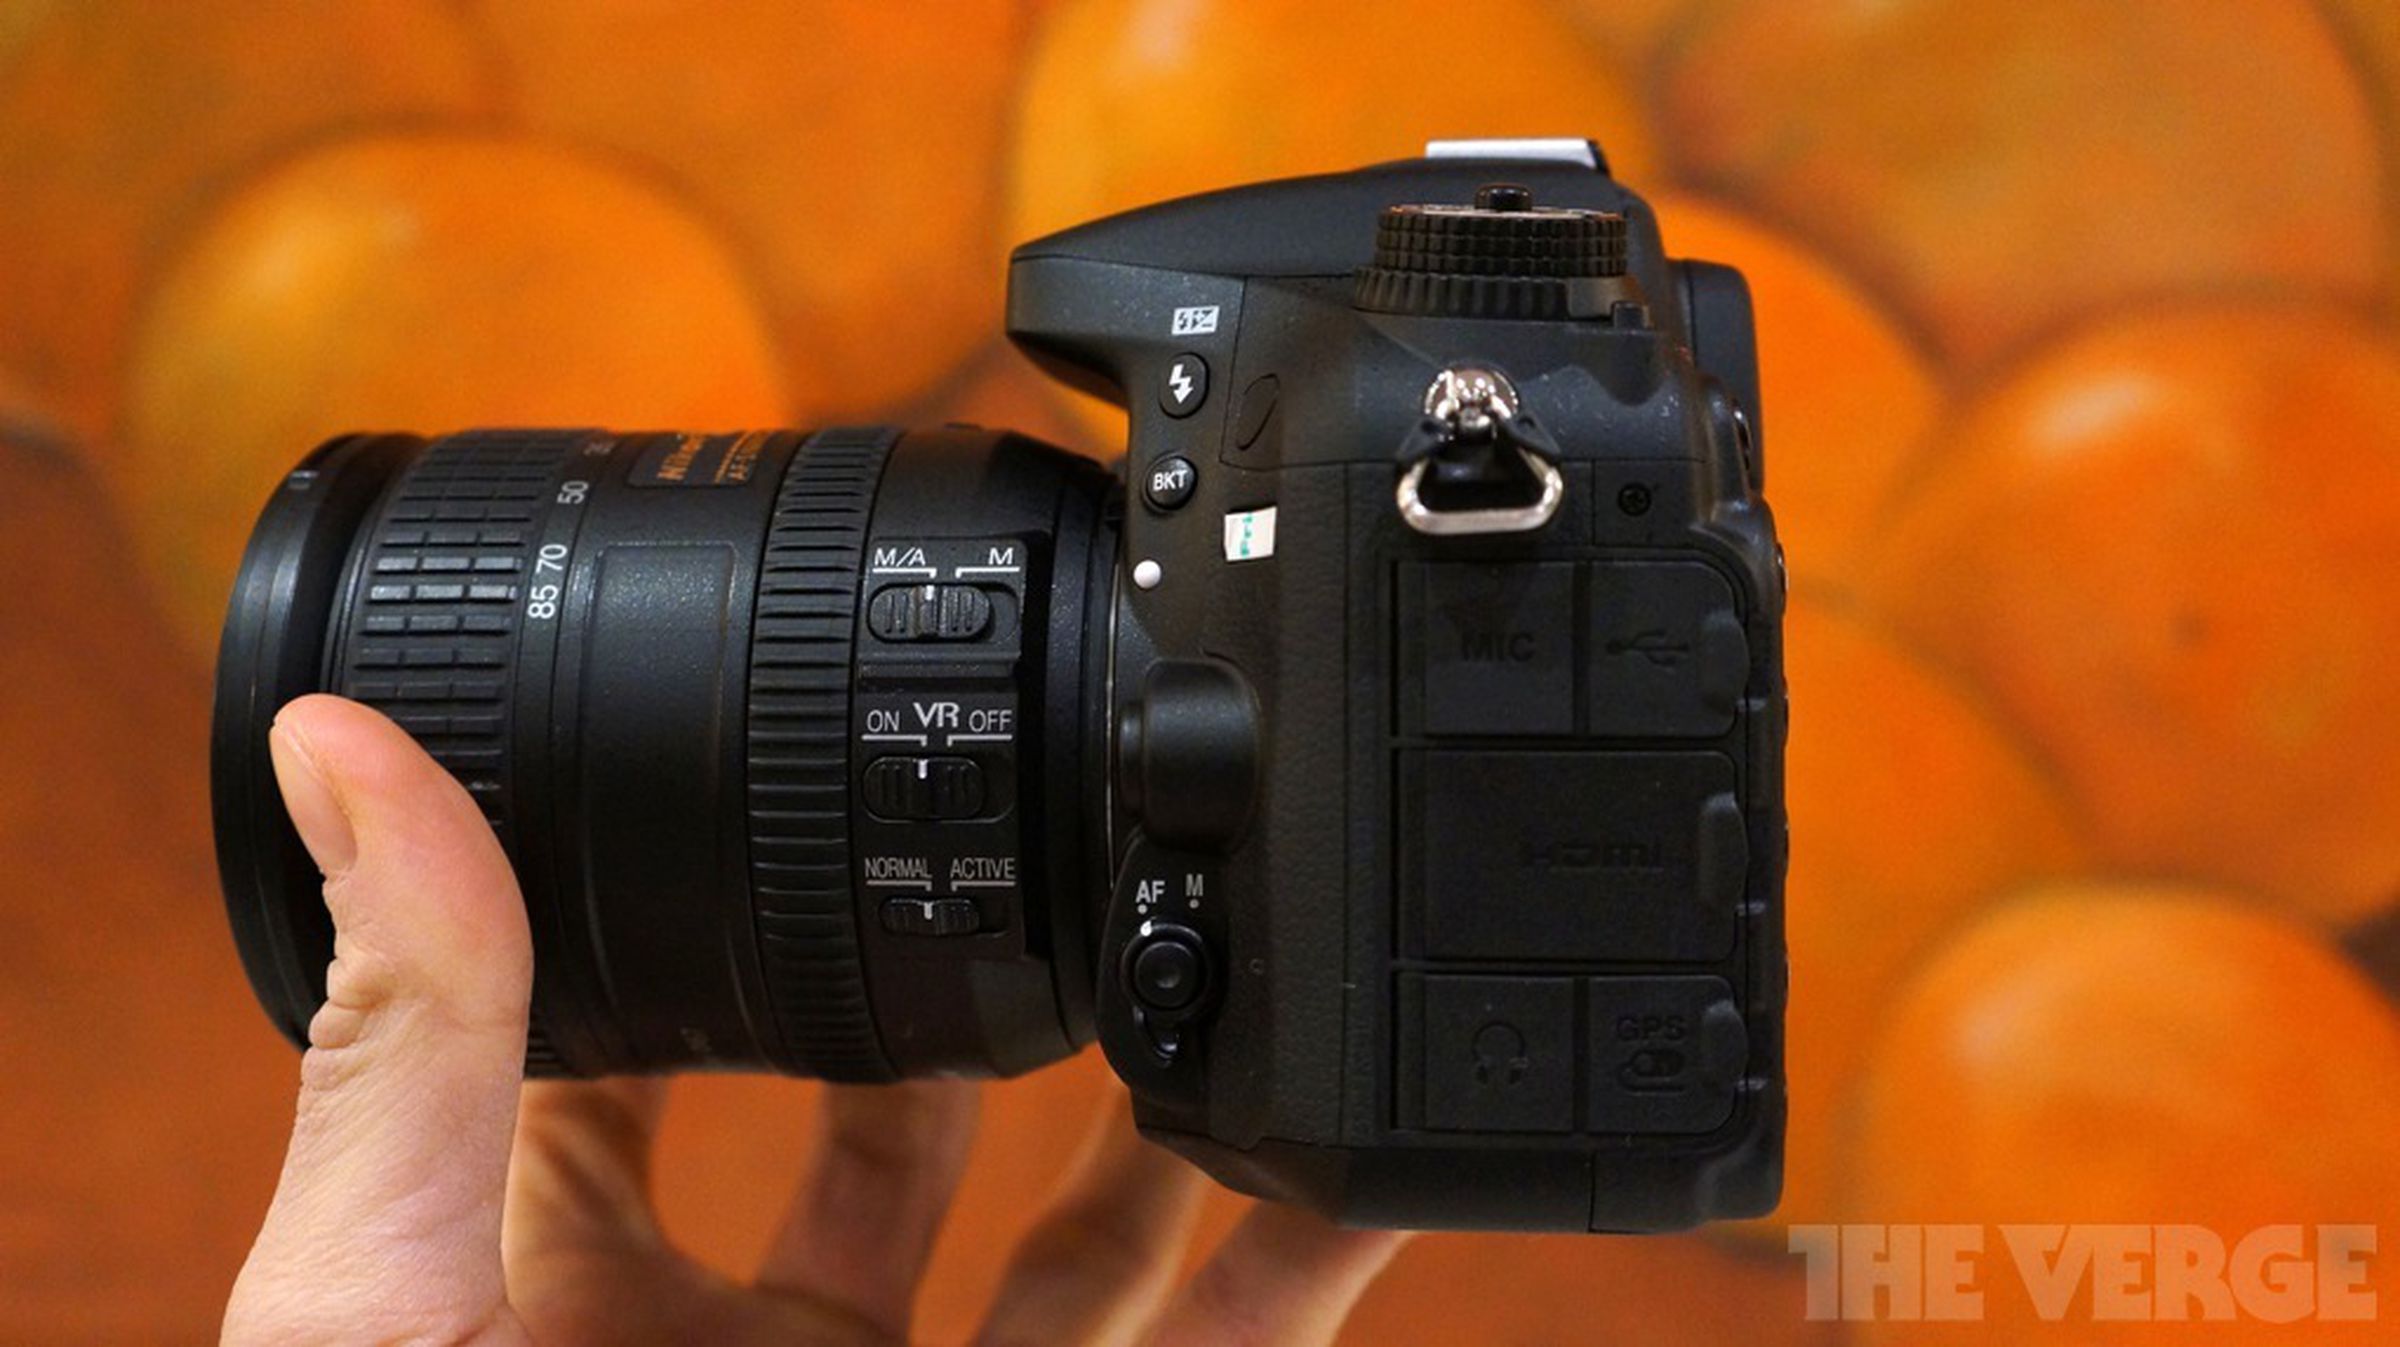 Nikon D7100 hands-on photos